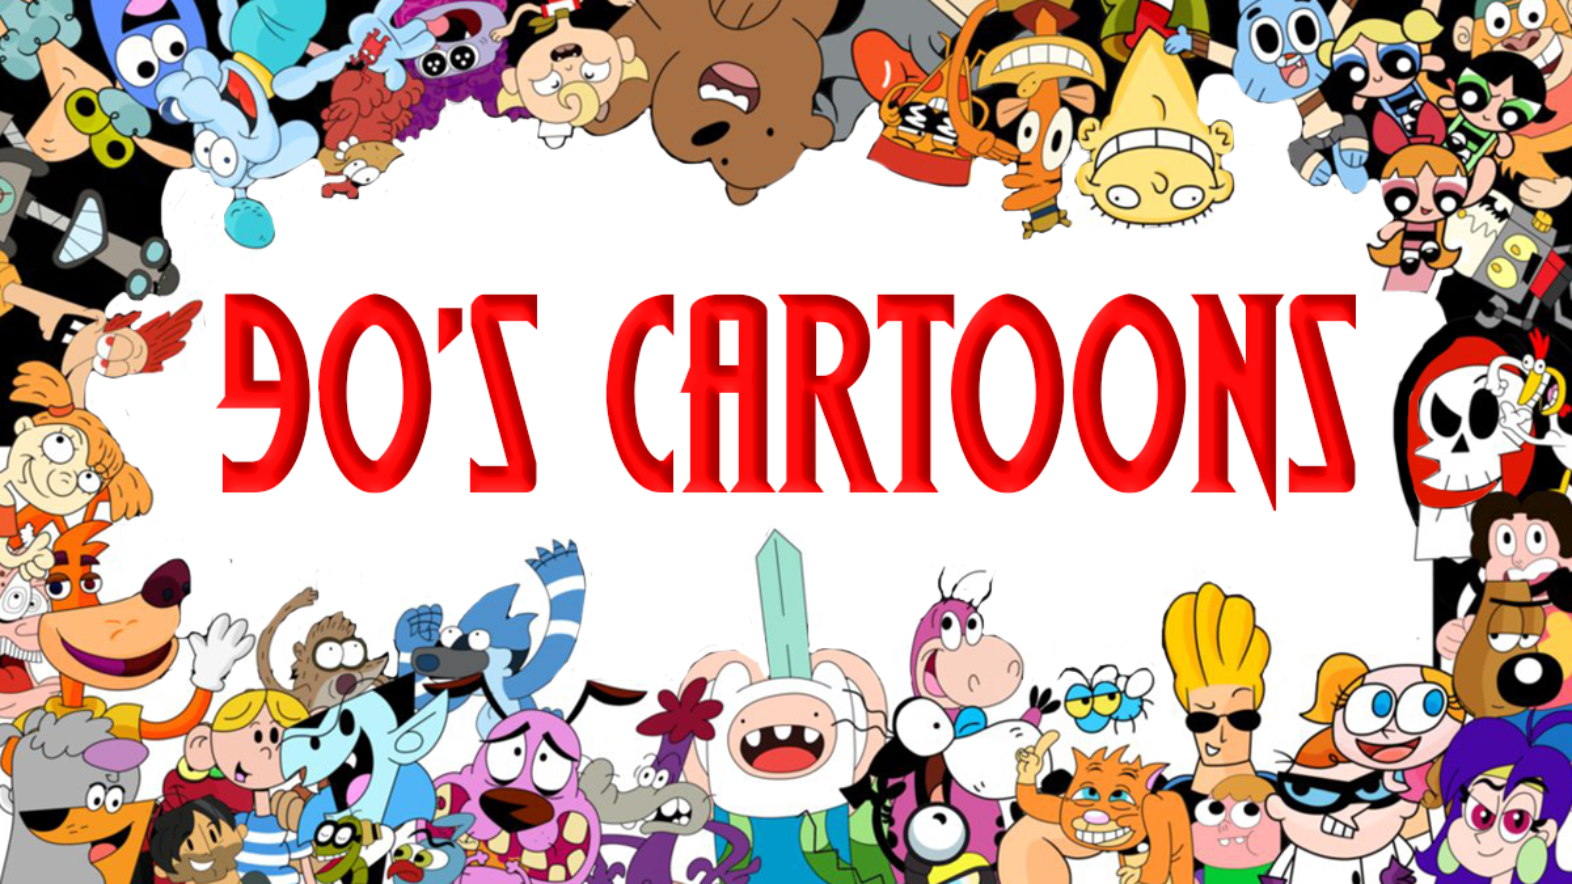 Top 5 90s Cartoons The Gen Z Kids Must Watch 1990s Cartoon Shows